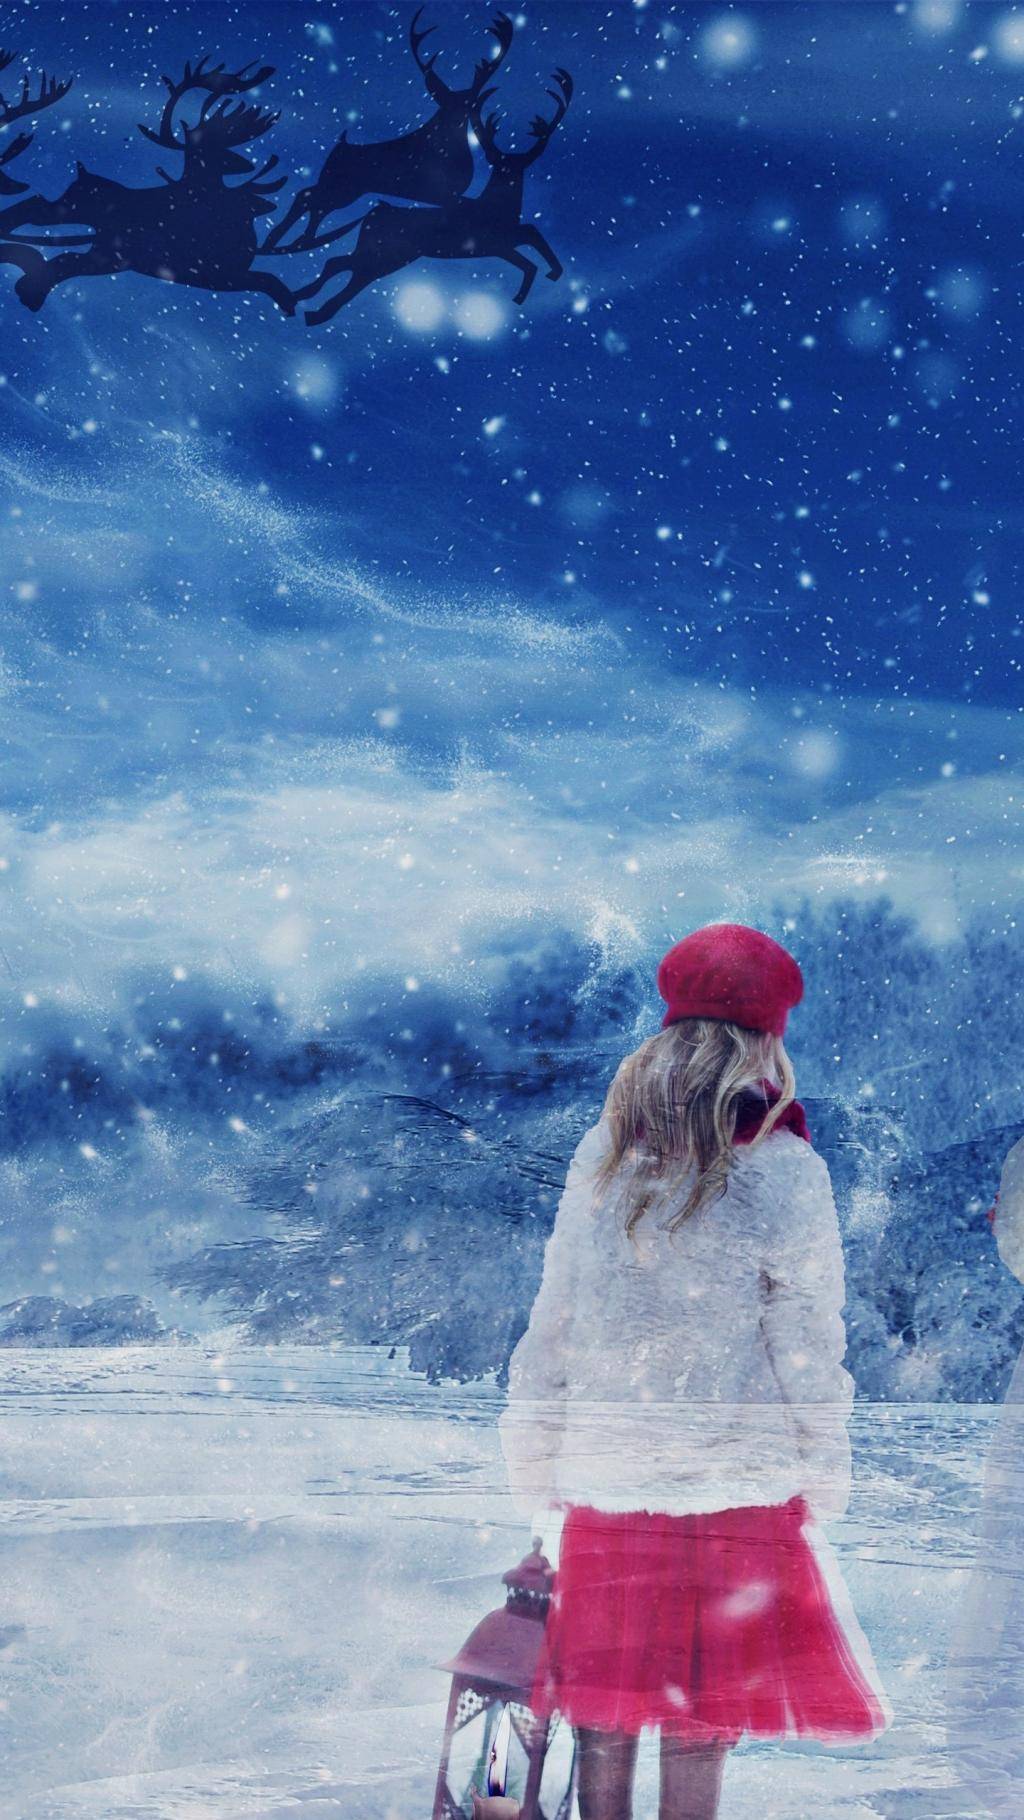 一个人雪景图片唯美图片